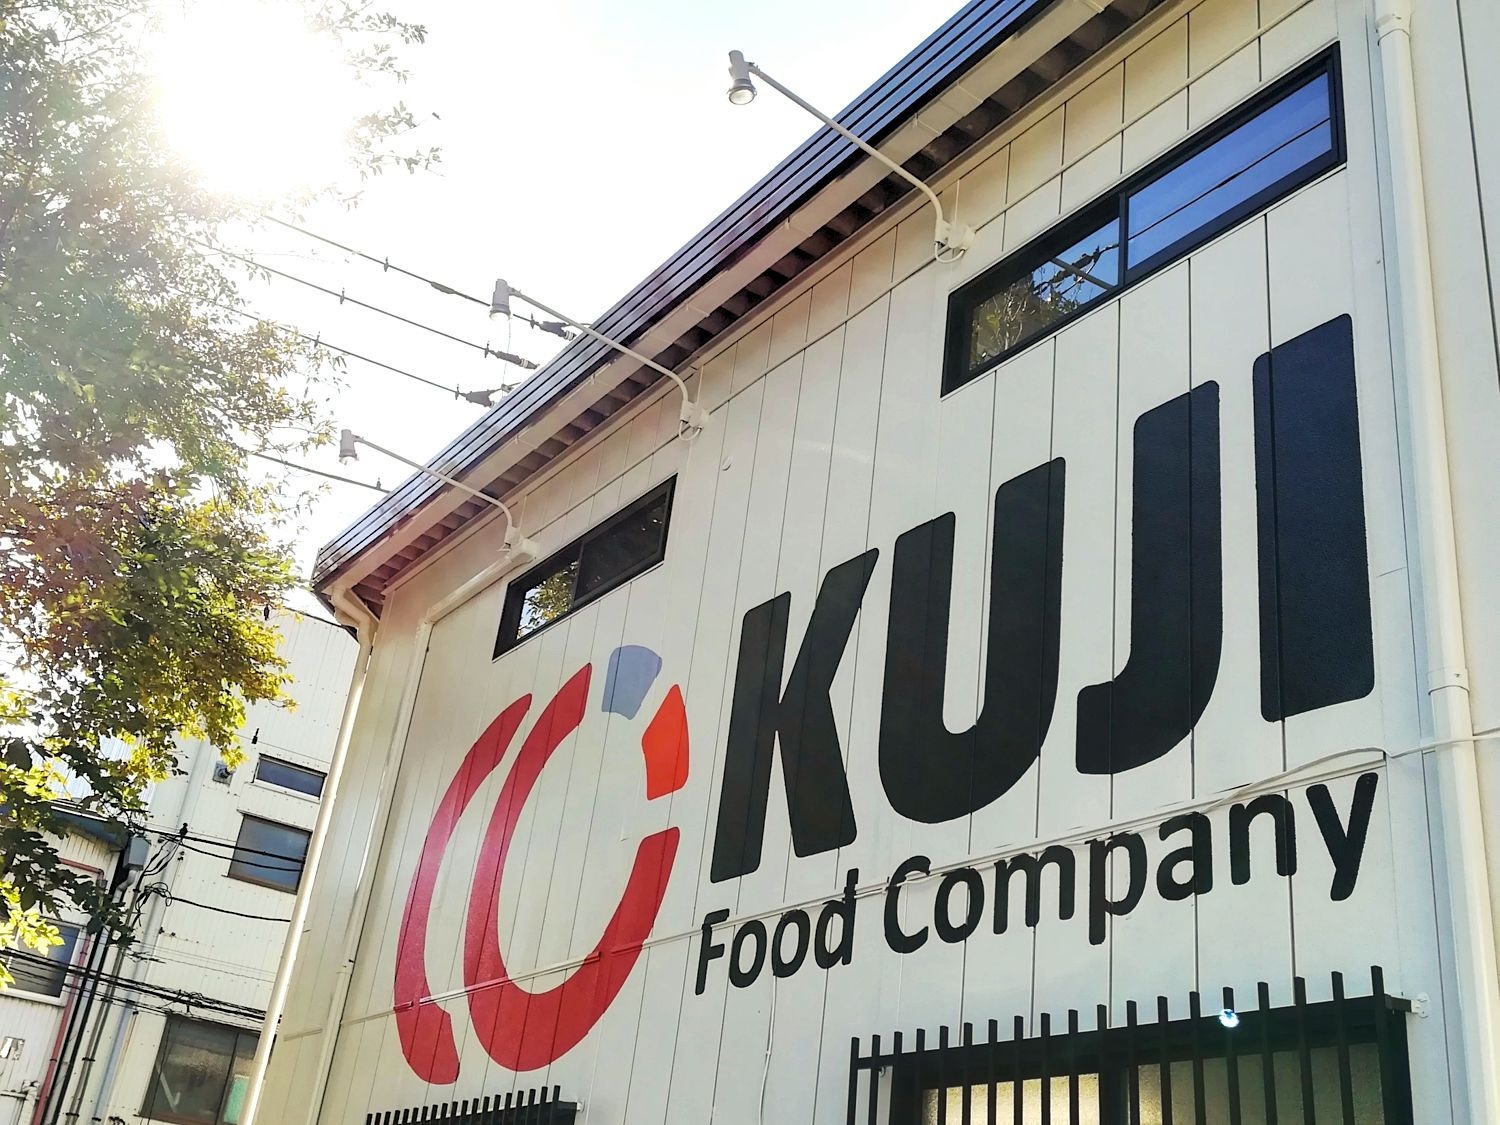 KUJI FOOD COMPANY